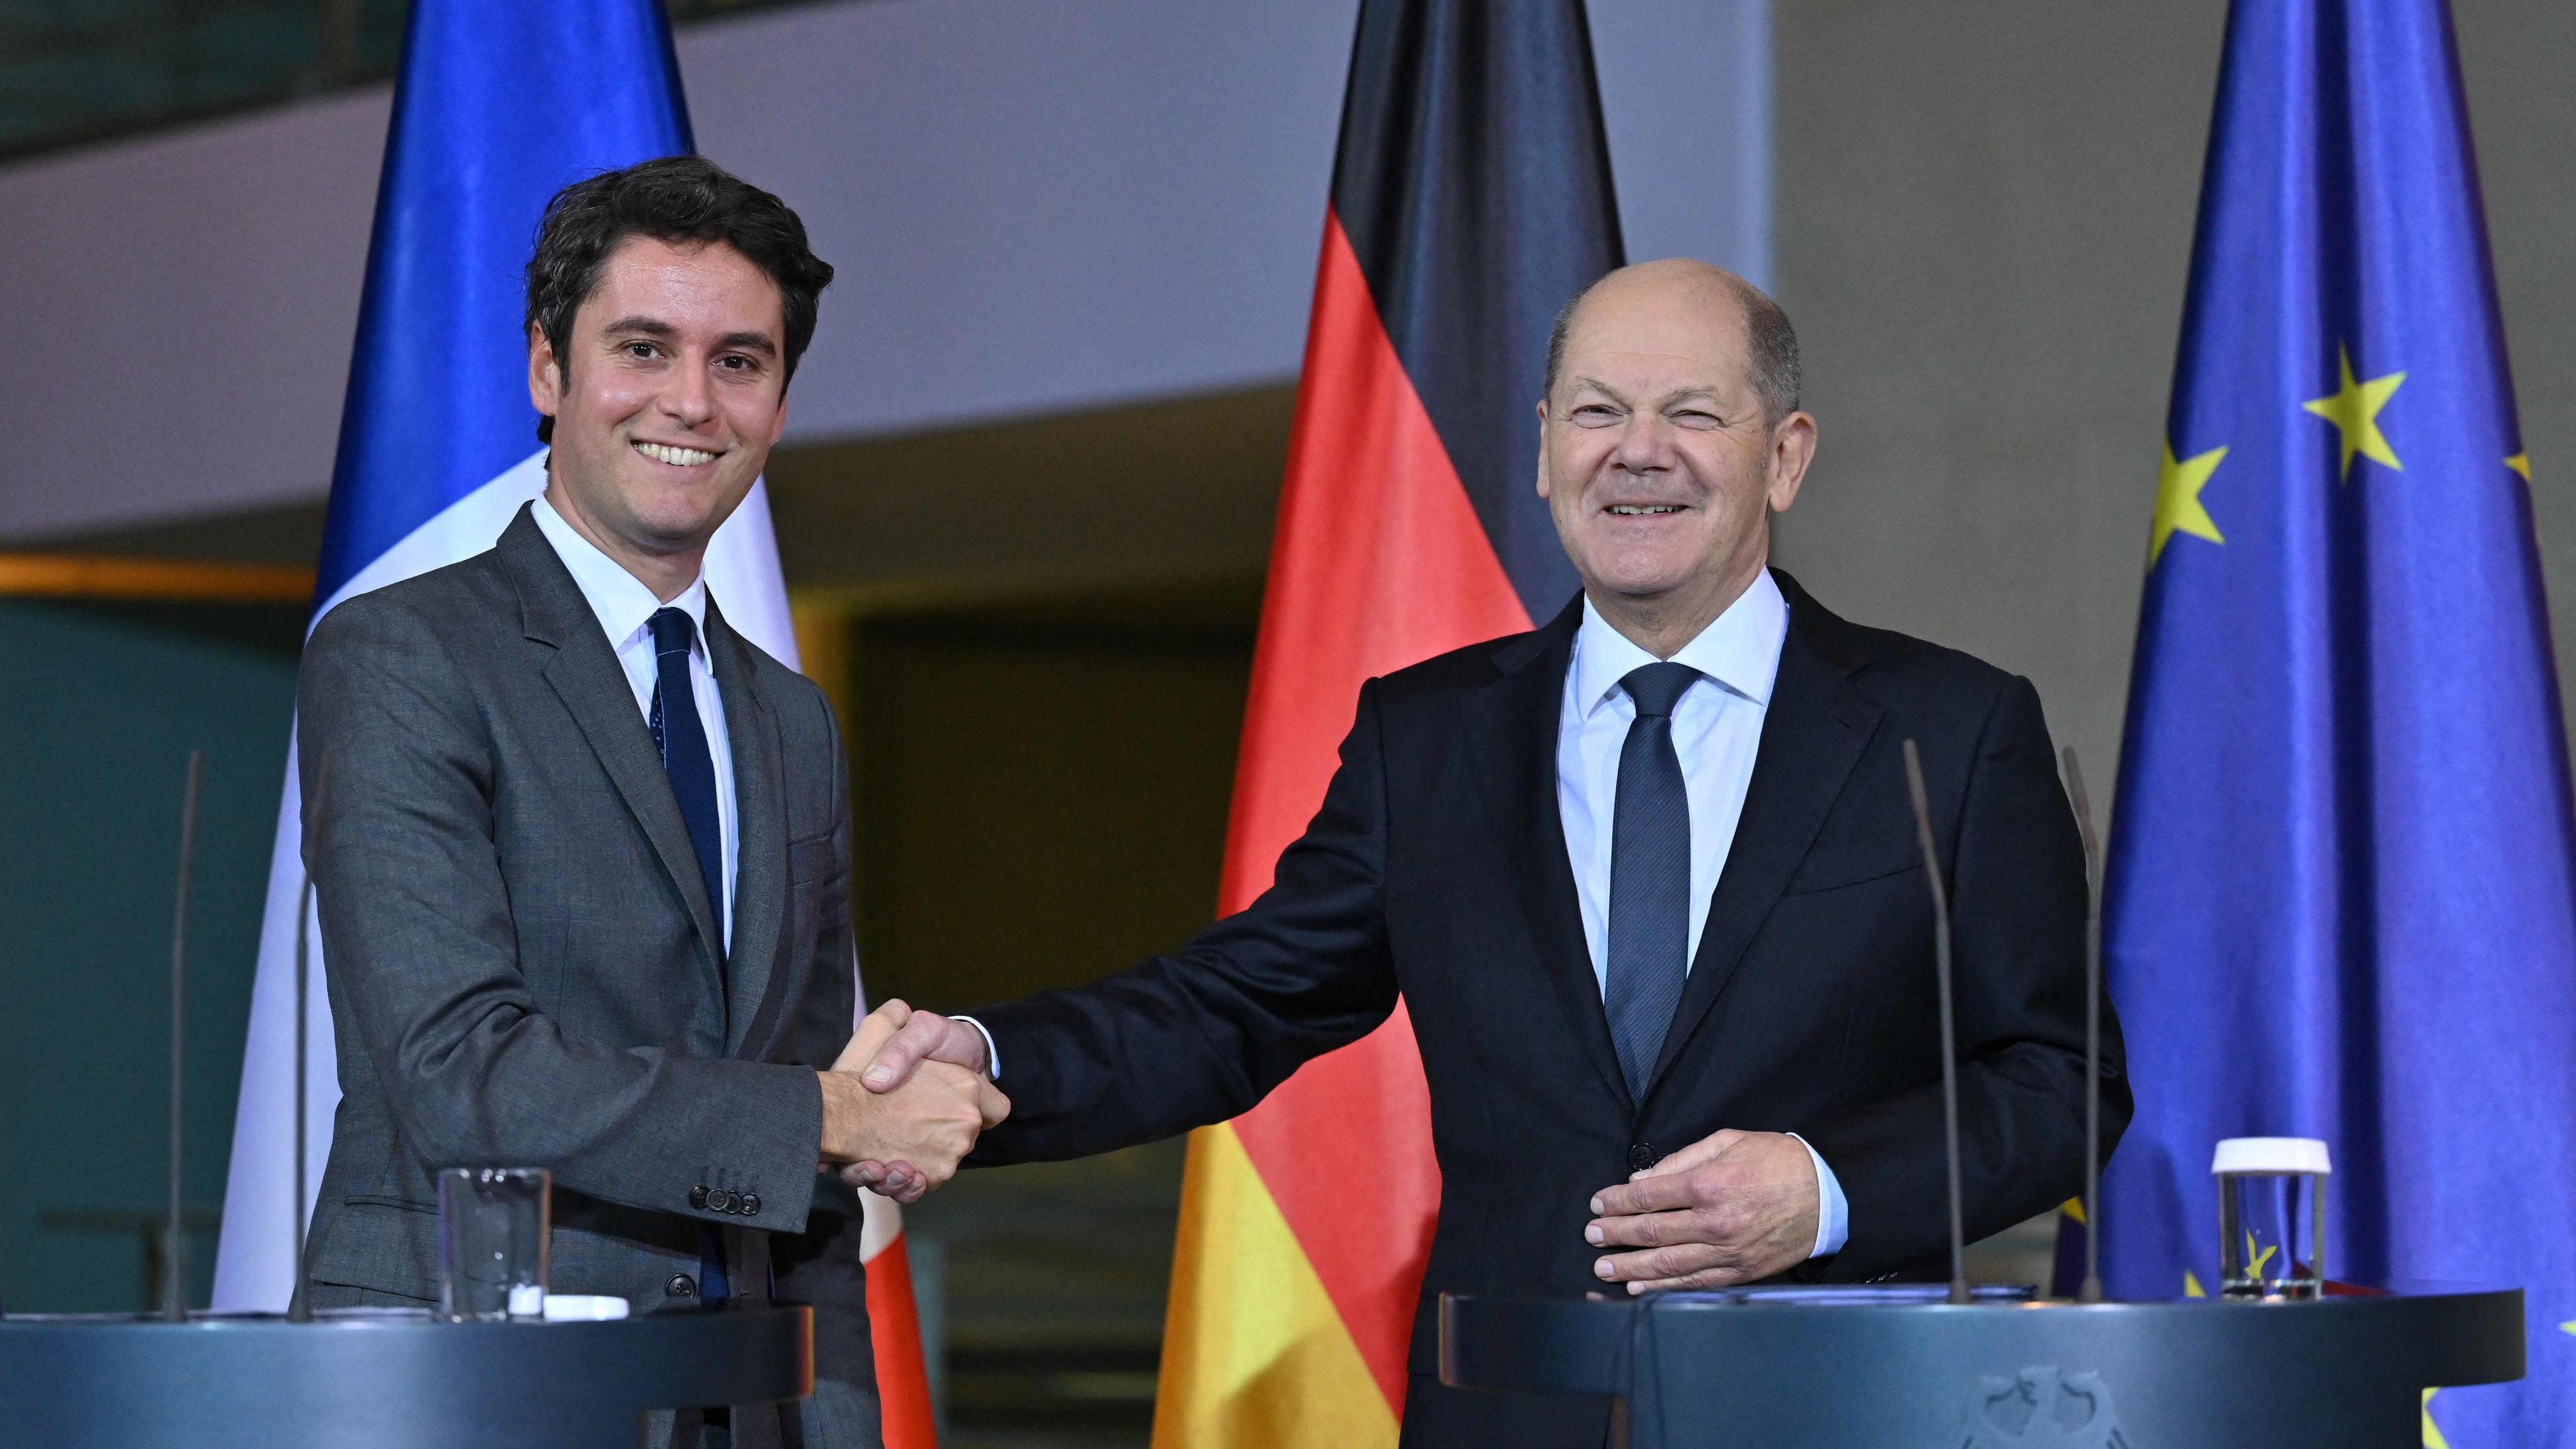 Bundeskanzler Olaf Scholz und Frankreichs Premierminister Gabriel Attal beim Treffen in Berlin. Sie stehen hinter zwei Redepulten und schütteln lächelnd die Hände.